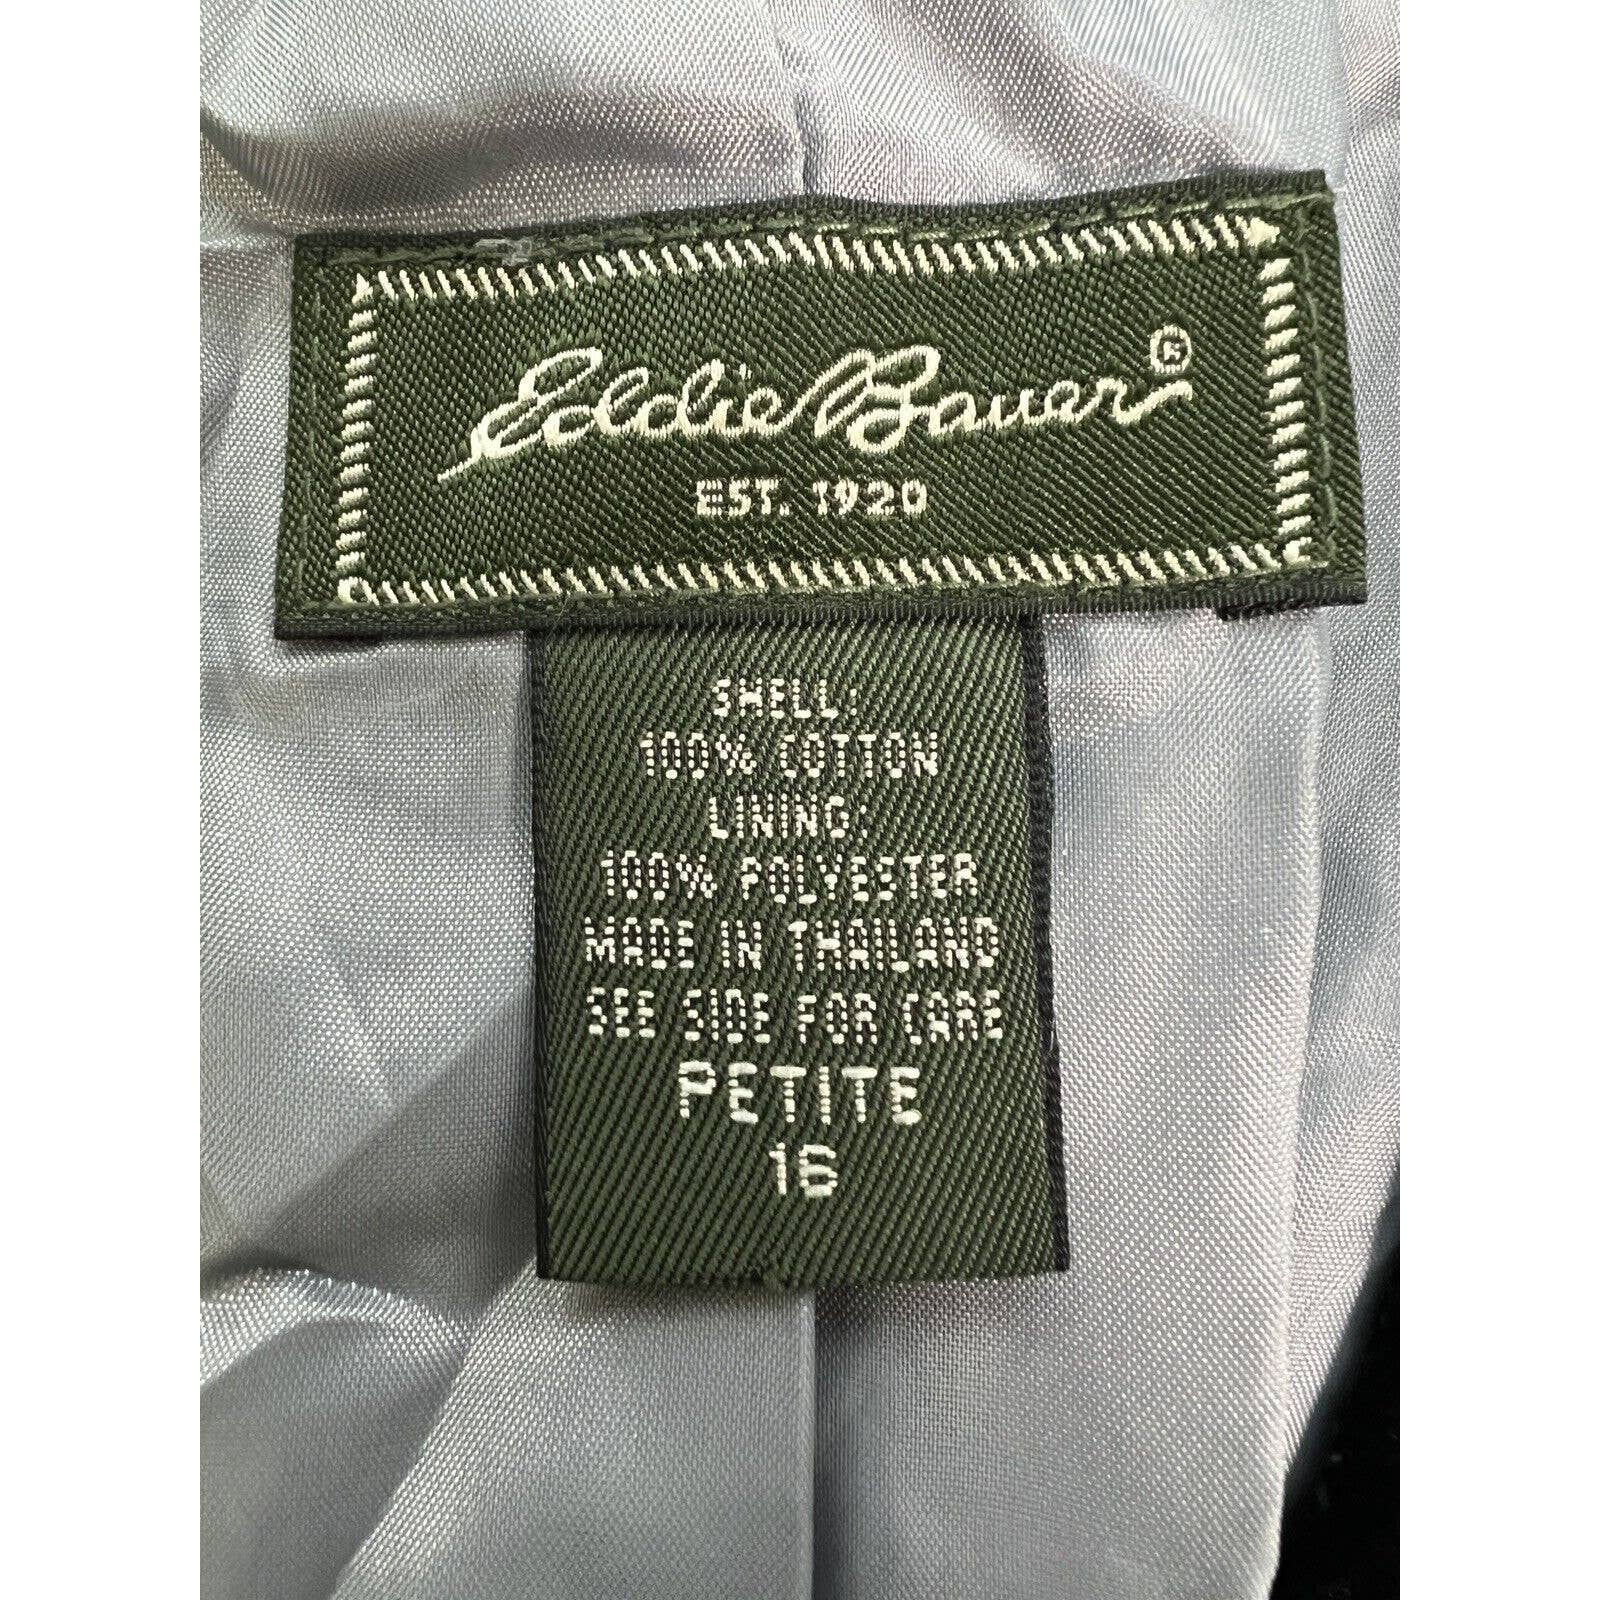 Eddie Bauer Velvet Blazer Women Petite 16 Black With Snowflakes 3 Button Jacket